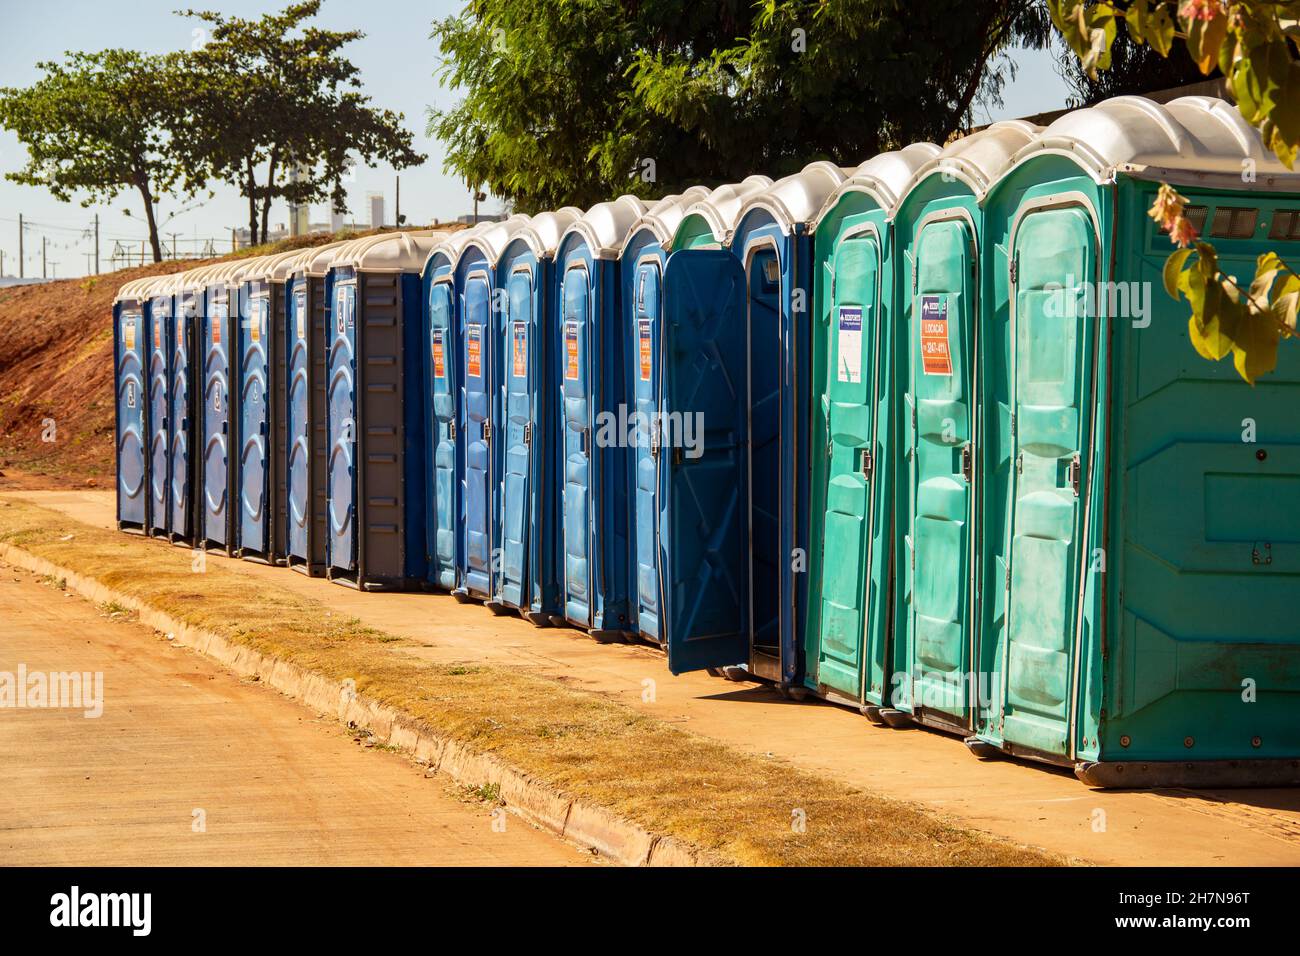 Goiânia, Goias, Brasilien – 17. Juli 2021: Einige chemische Toiletten standen auf einer Baustelle. Stockfoto